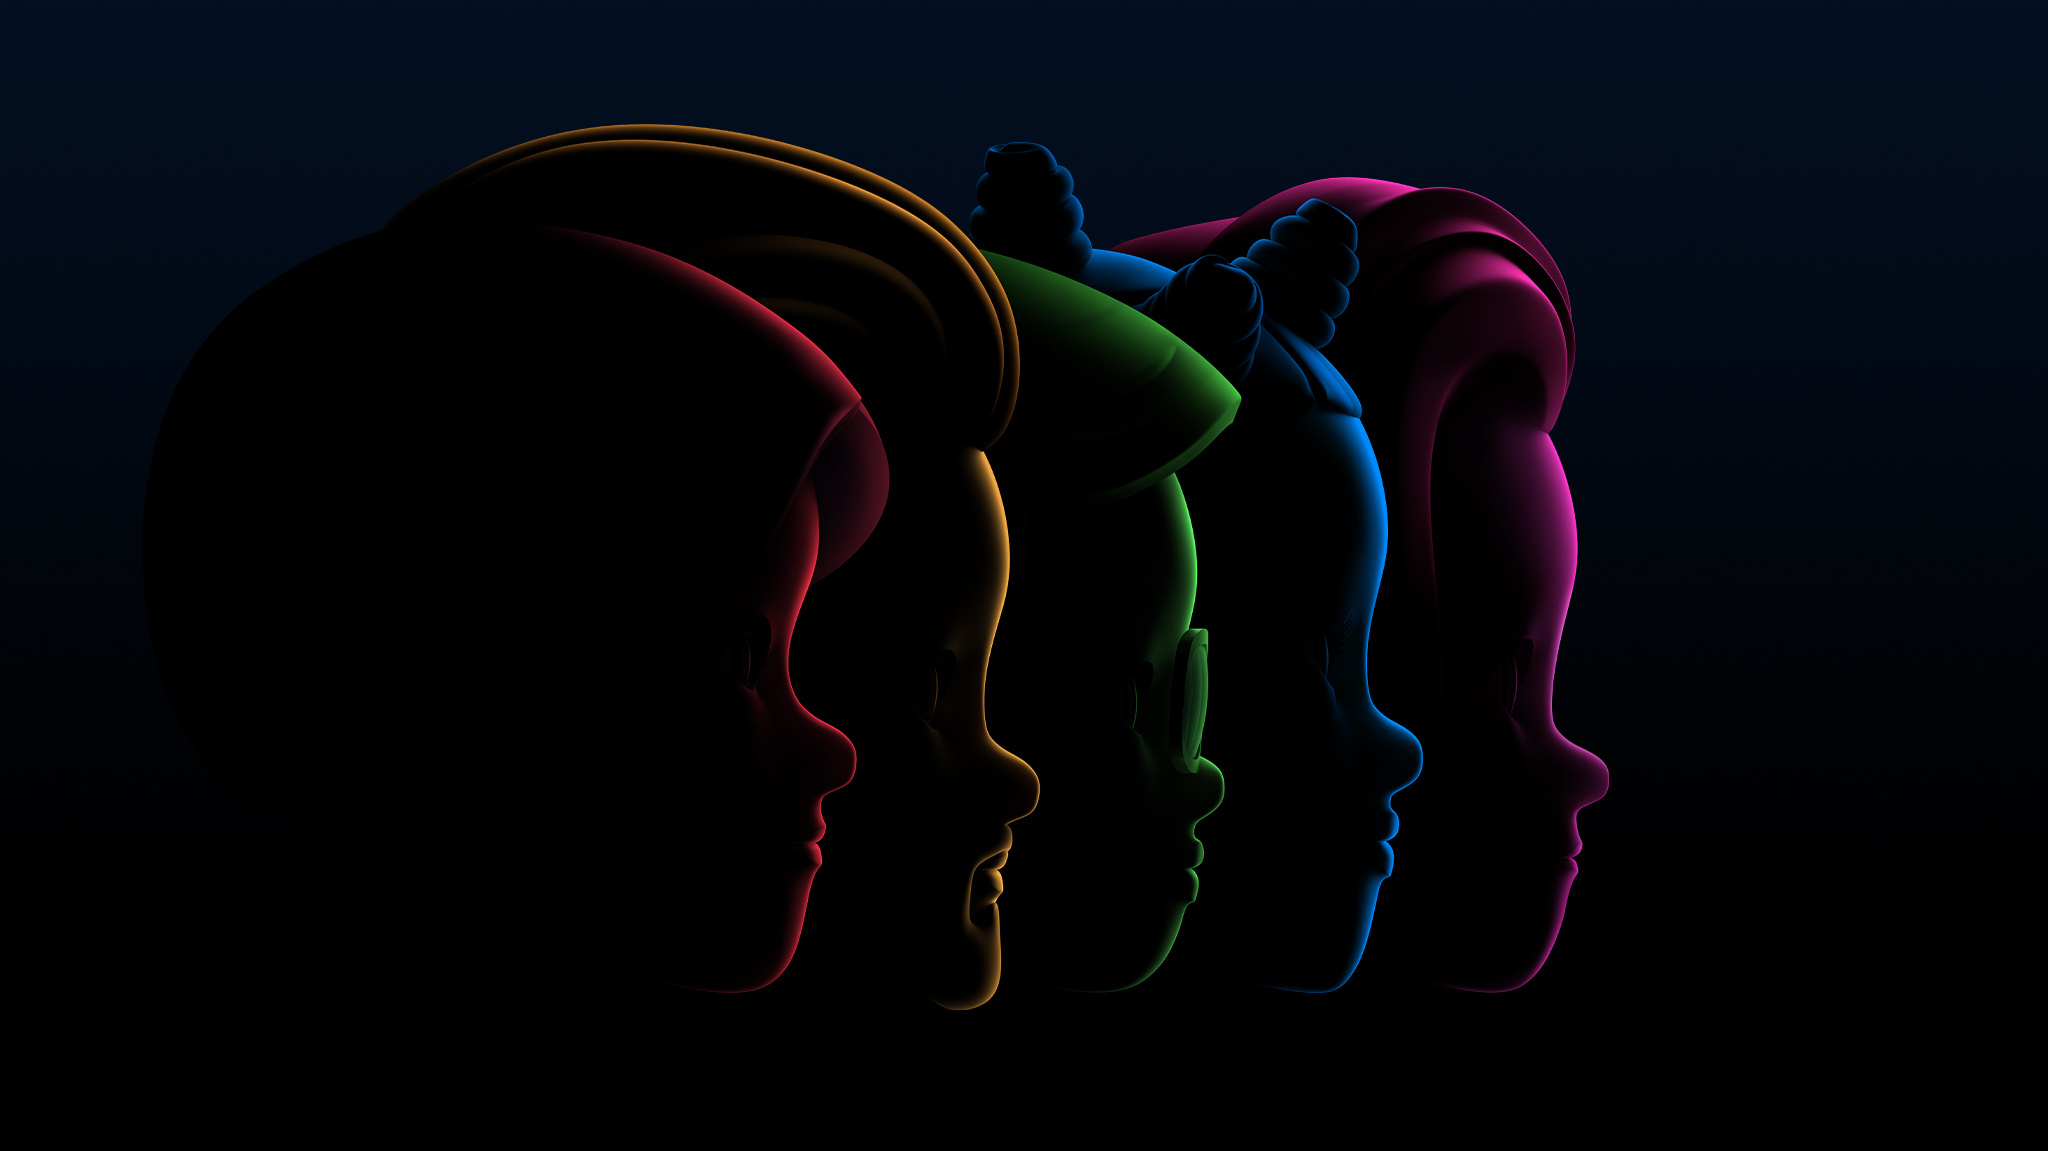 일렬로 서 있는 다섯 사람의 얼굴 측면 실루엣을 각각 빨간색, 노란색, 초록색, 파란색, 보라색으로 보여주는 이미지.